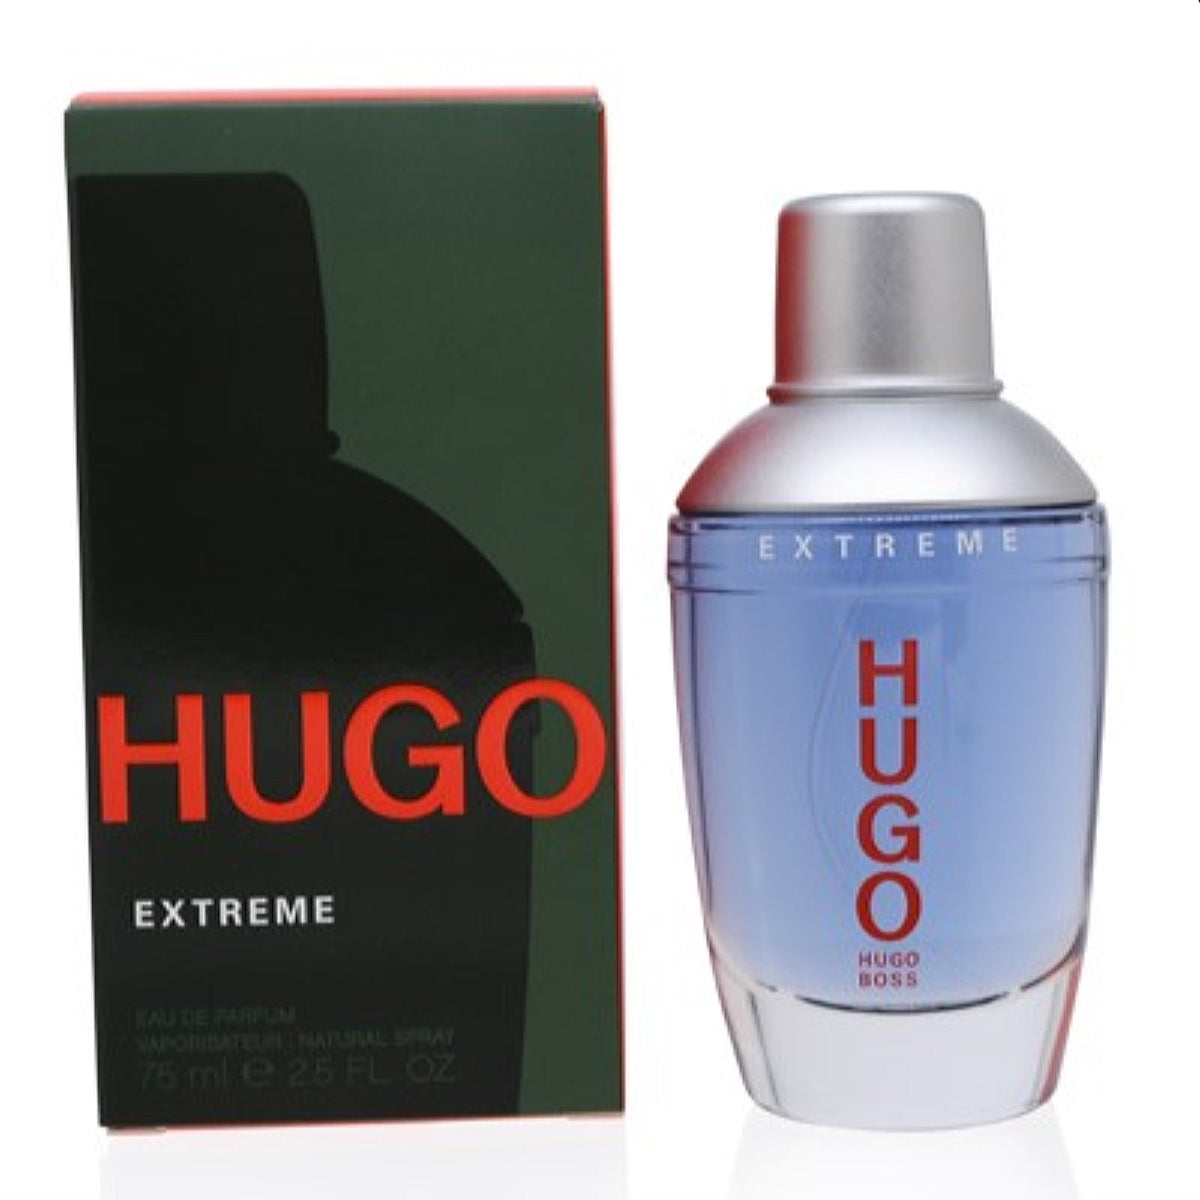 Hugo Green Man Extreme Hugo Boss Edp Spray 2.5 Oz (75 Ml) For Men  